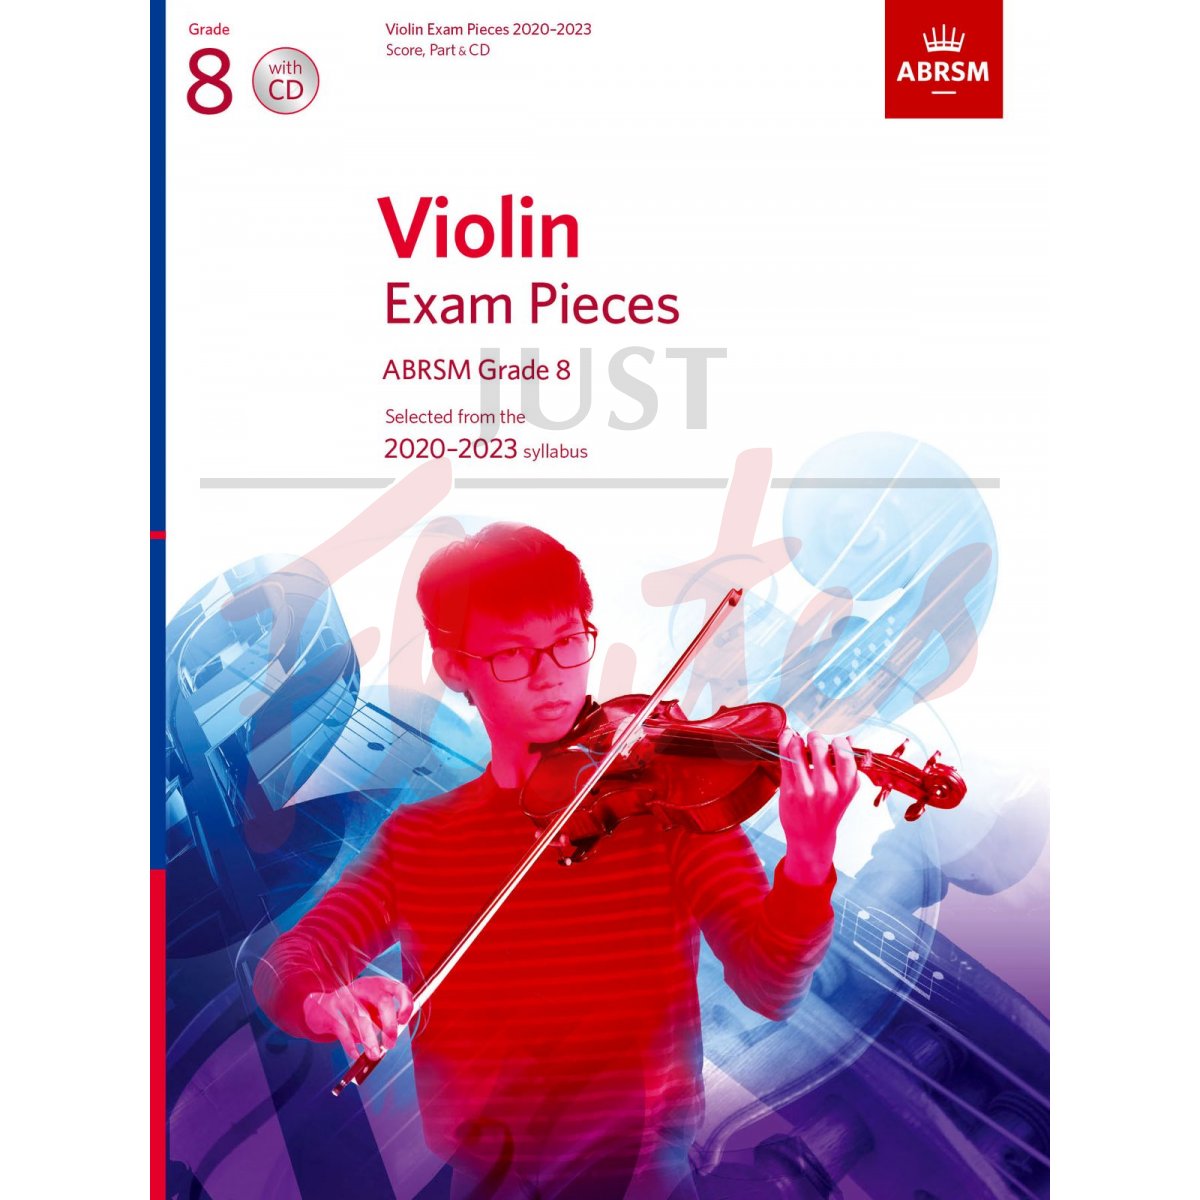 Violin Exam Pieces 2020-2023, Grade 8